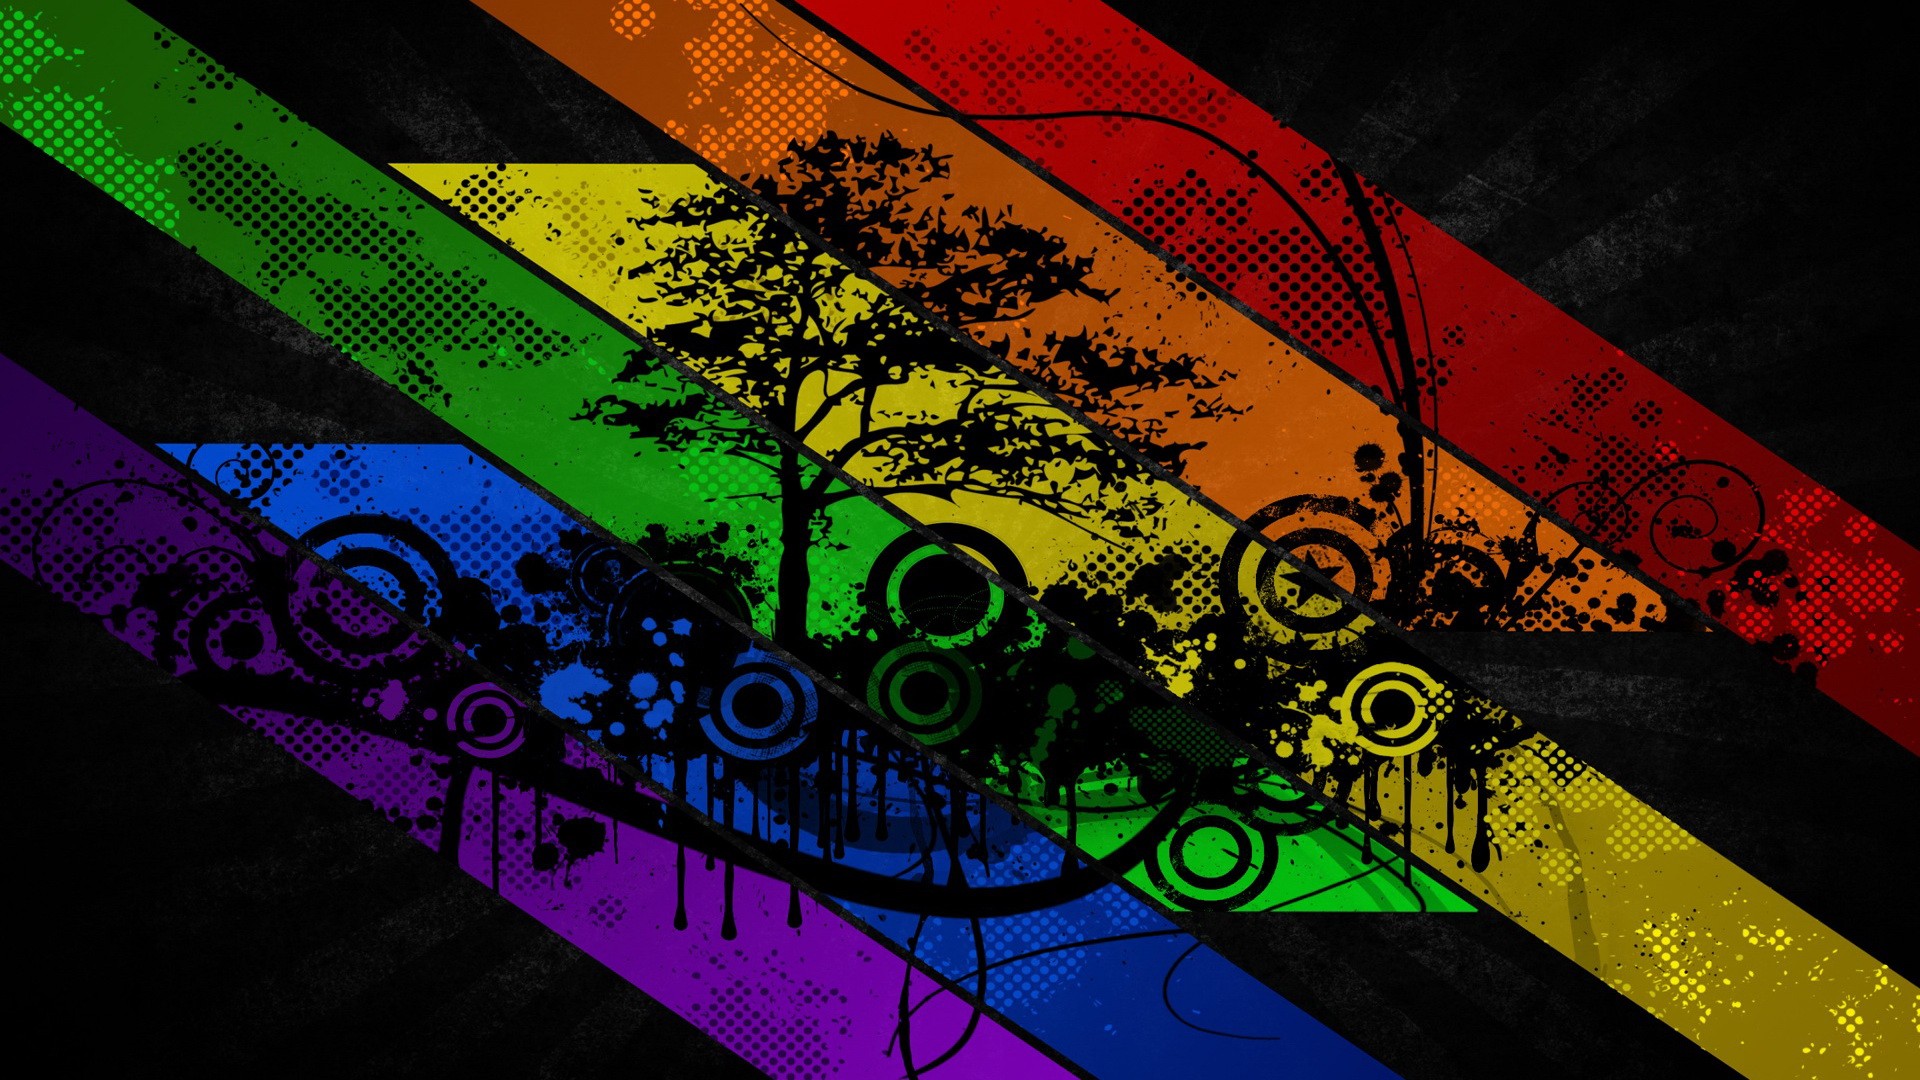 gay pride wallpaper for laptop wallpaper